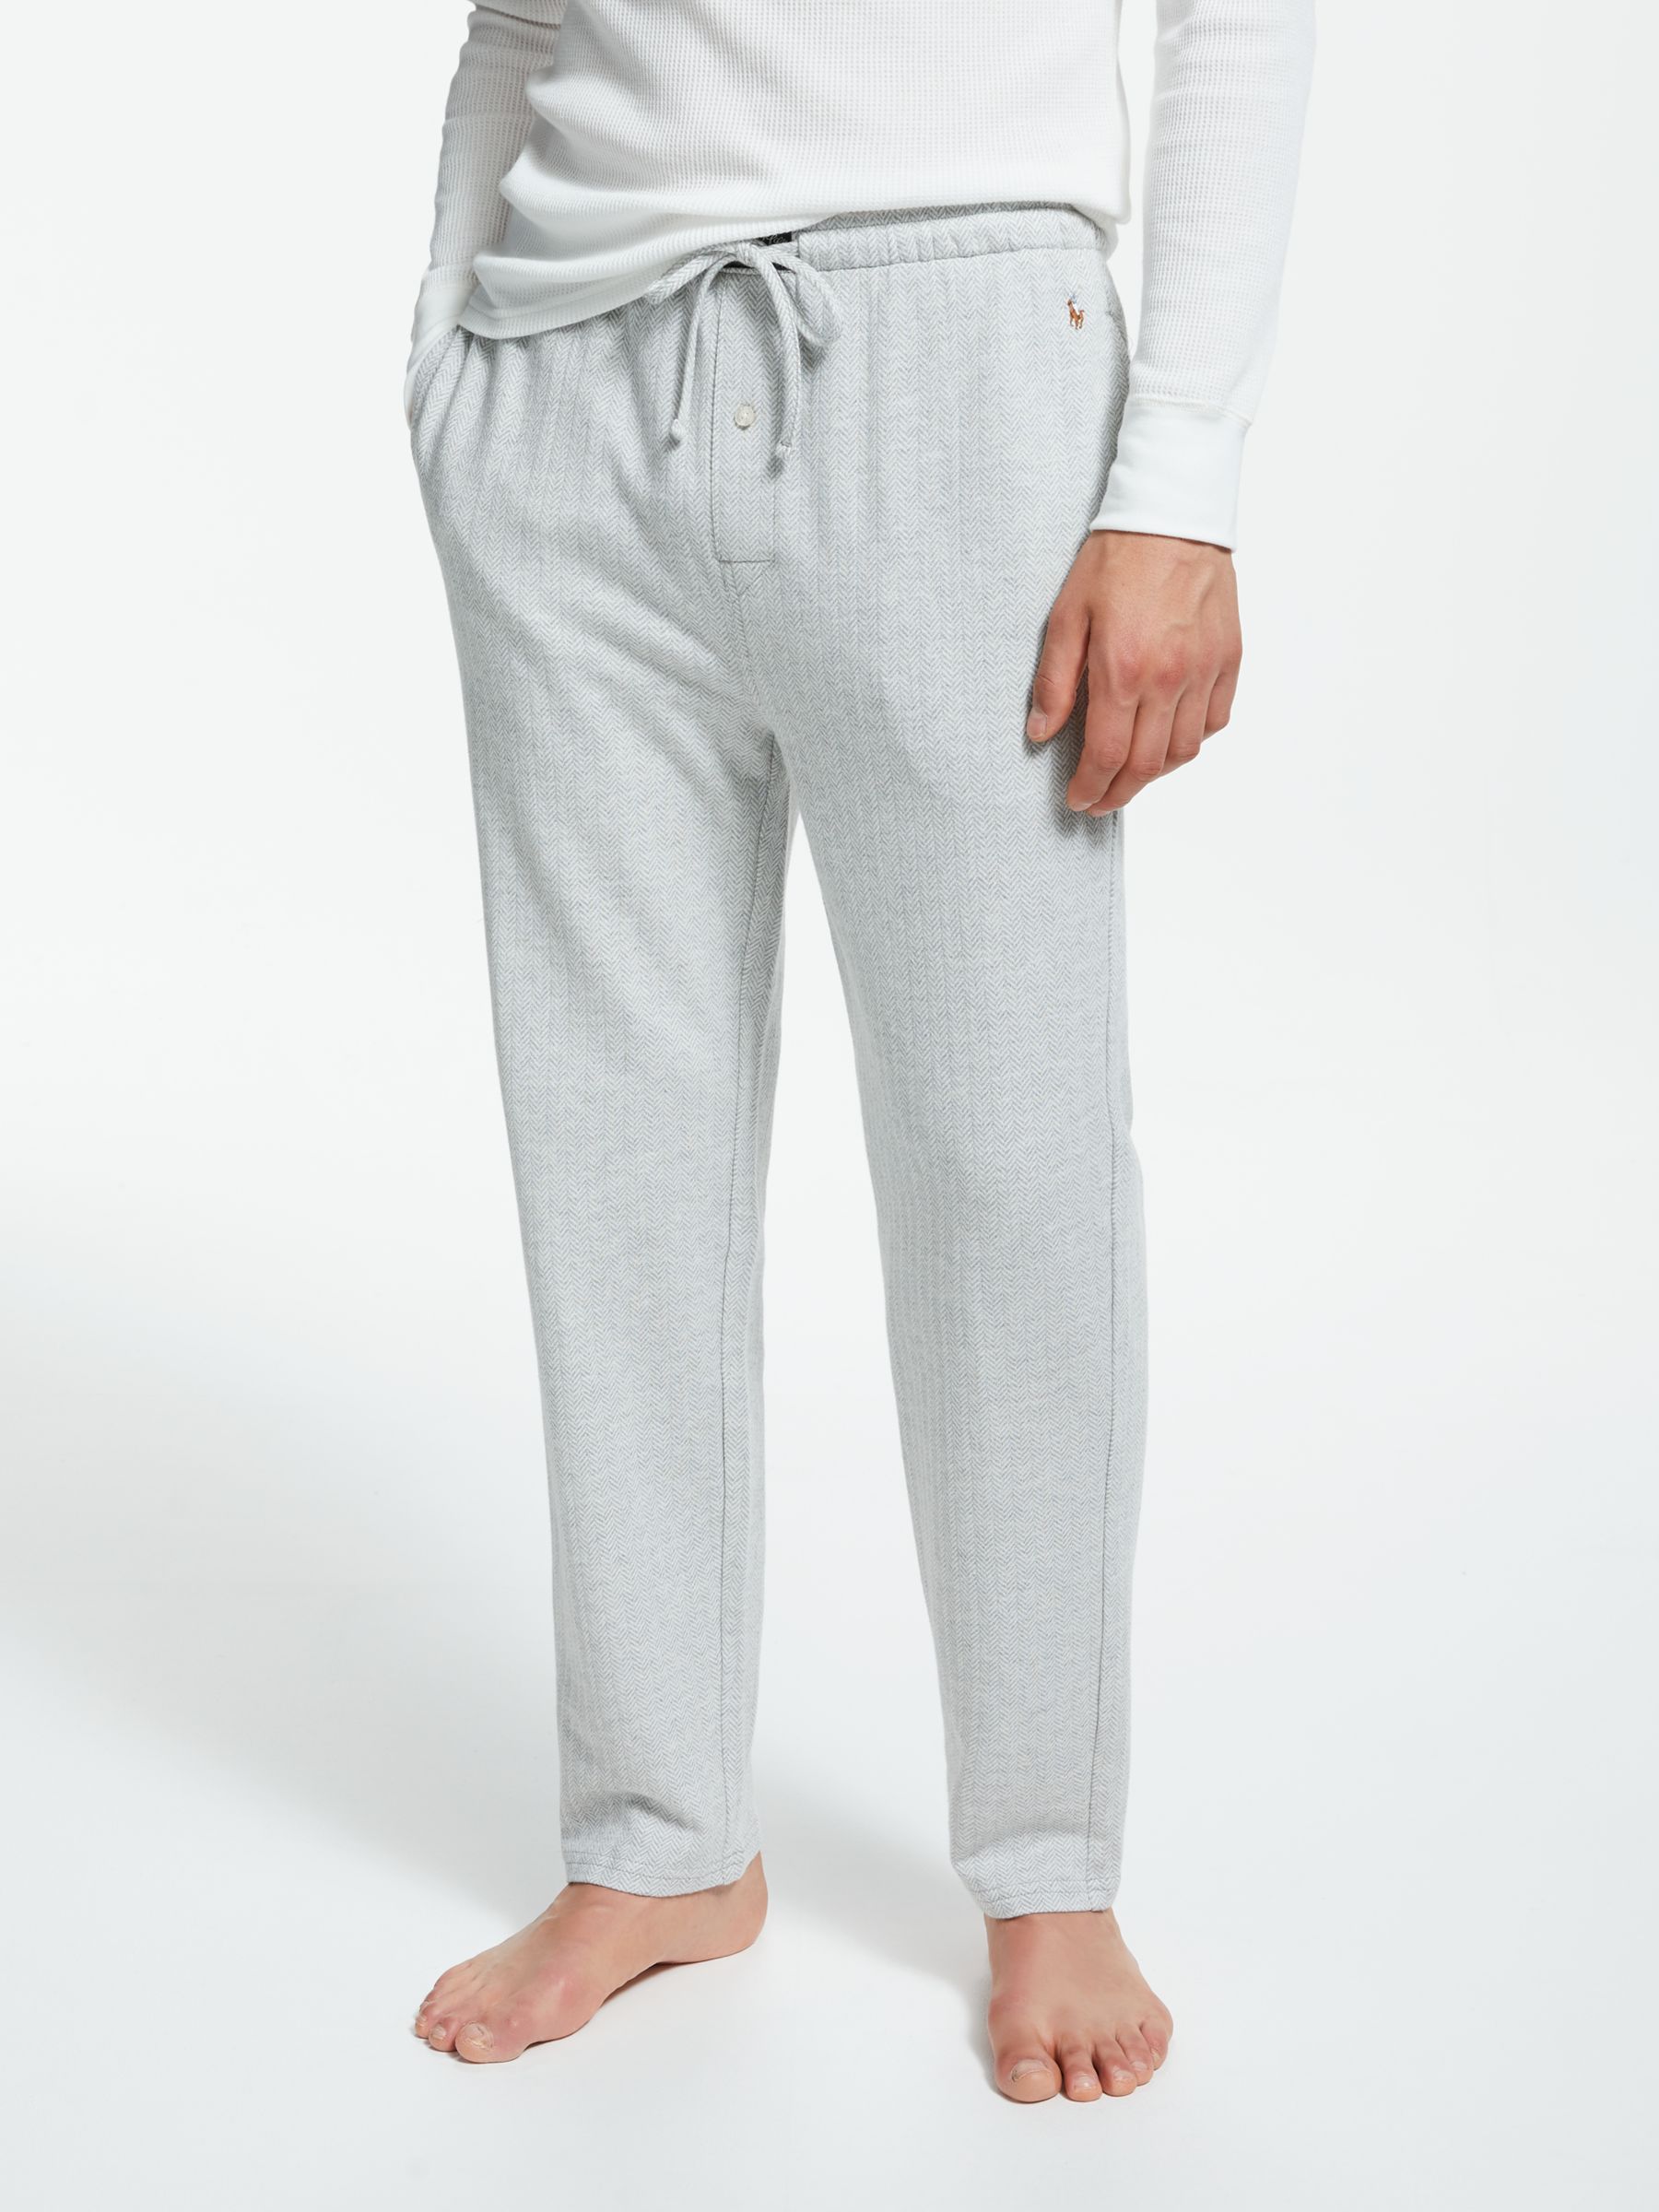 ralph lauren grey pants